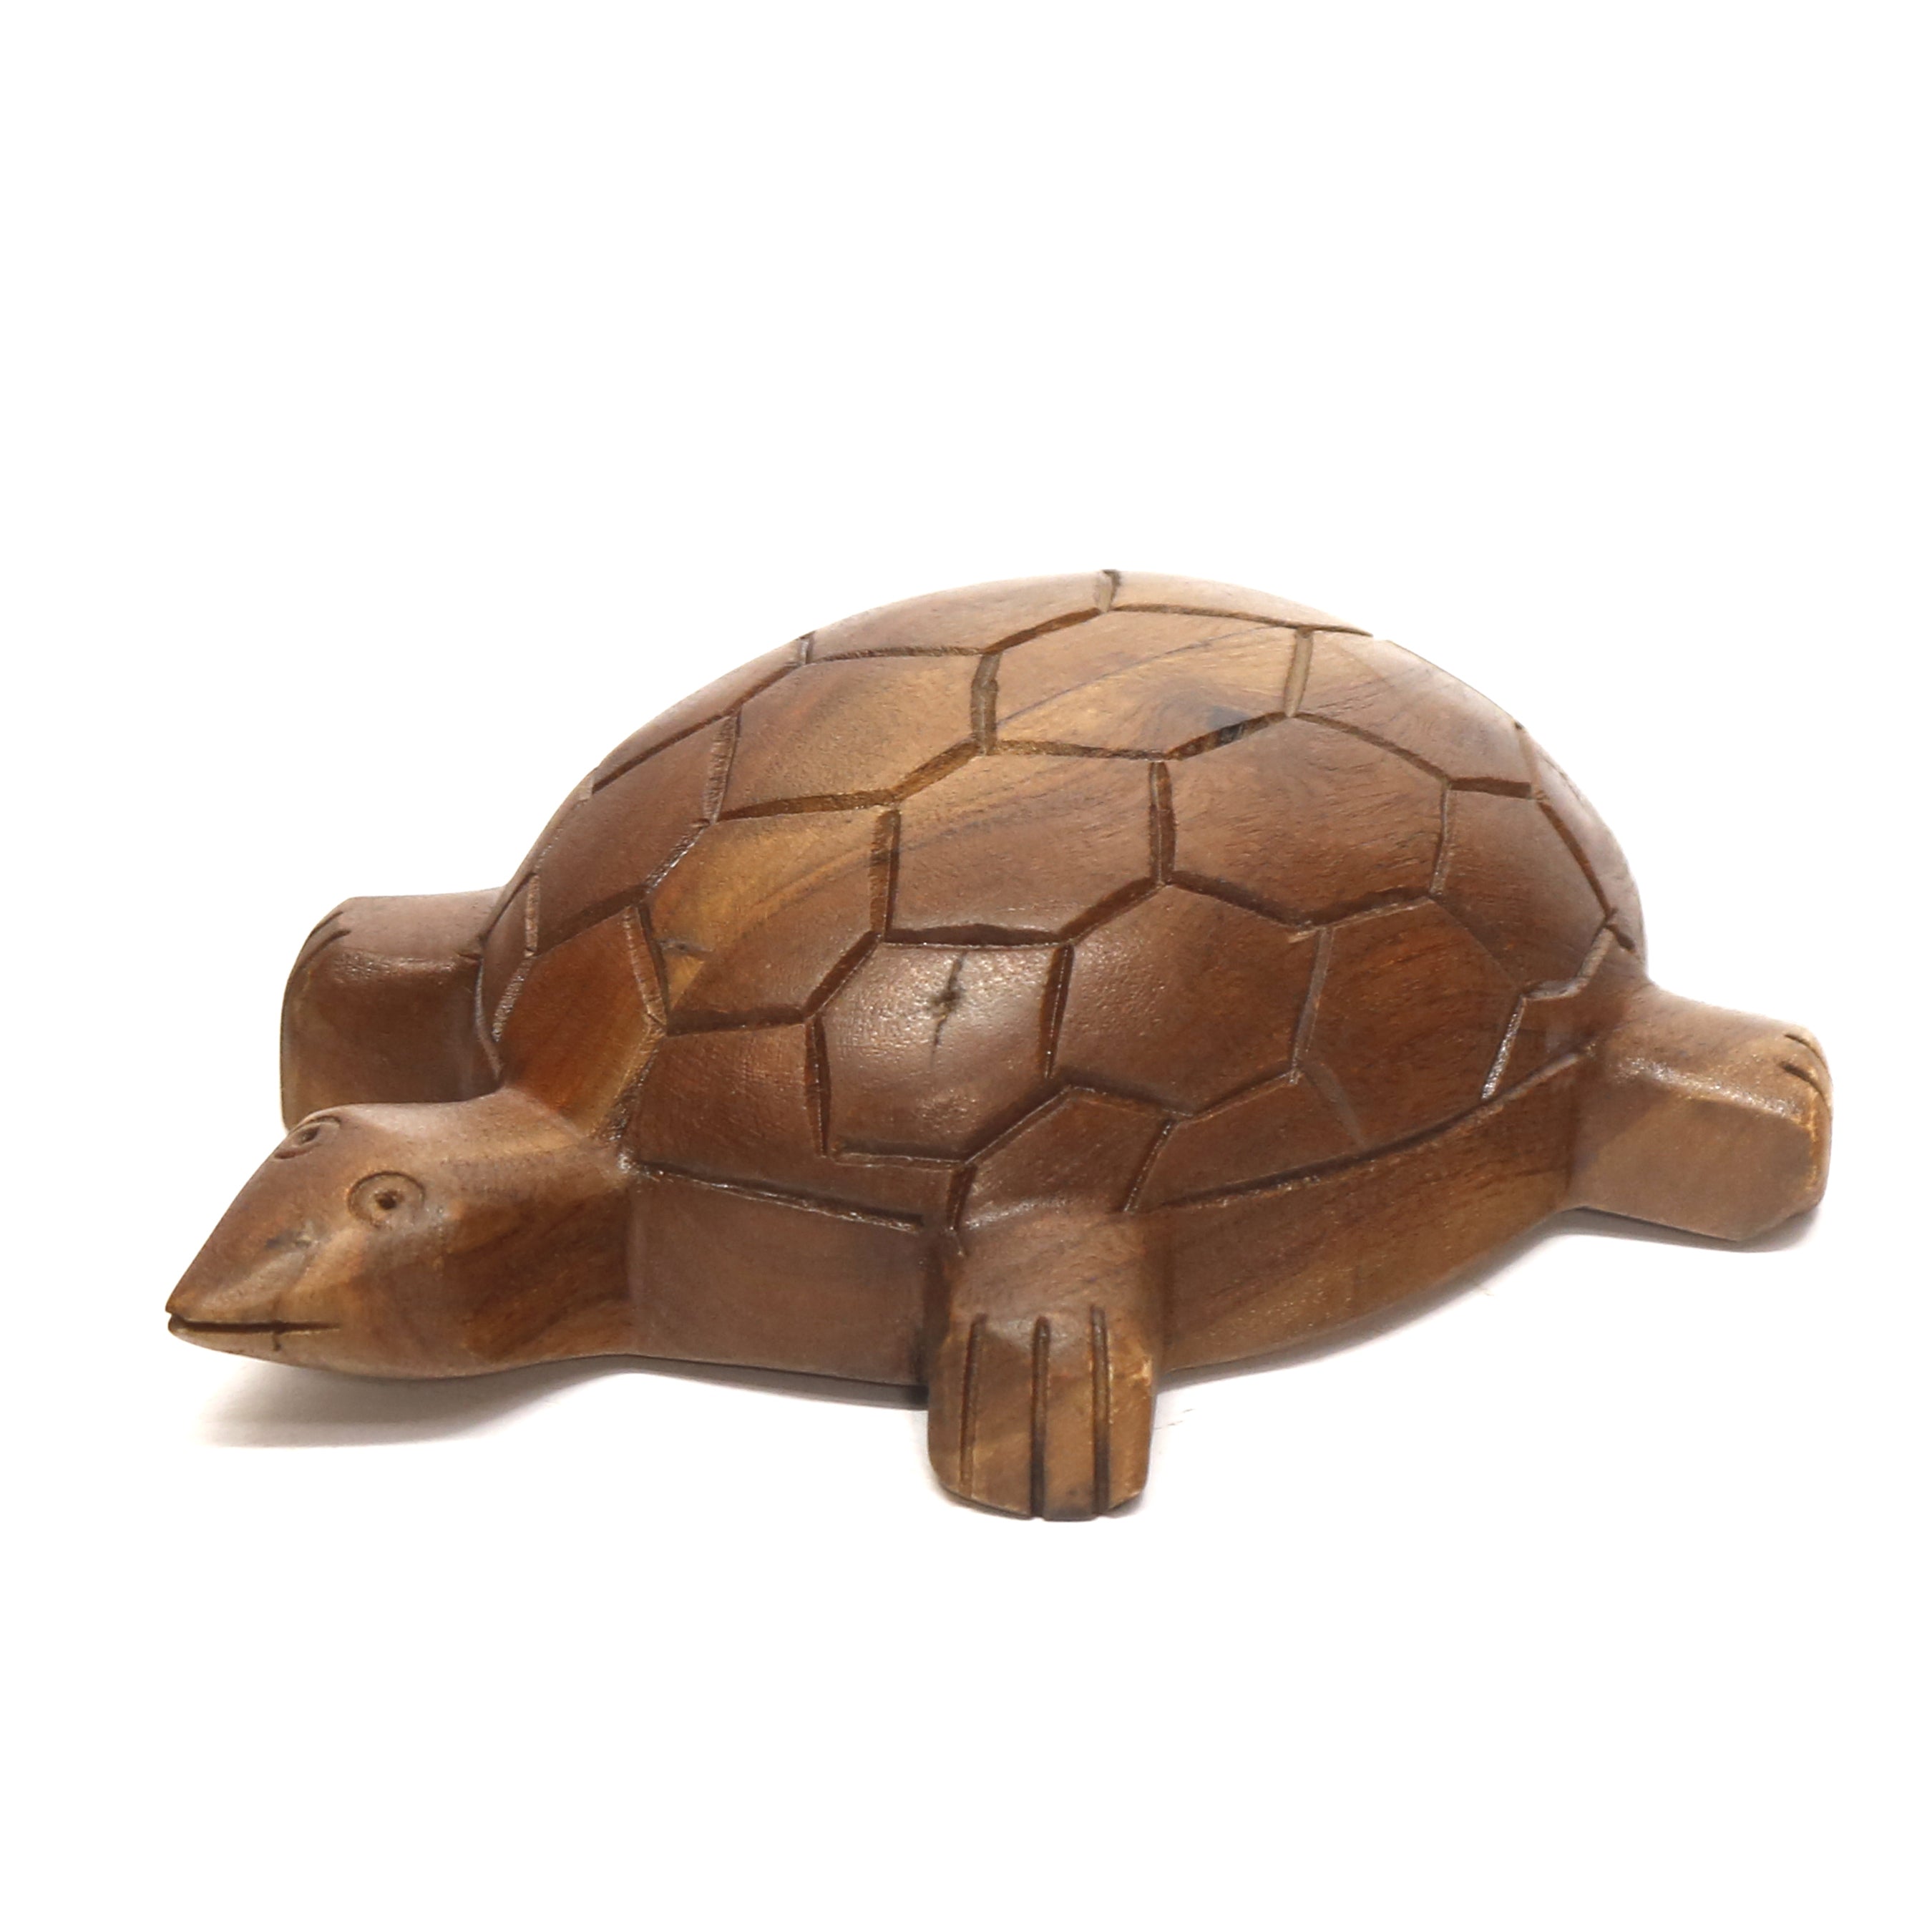 Wooden Detailed Turtle Showpiece Animal Figurine